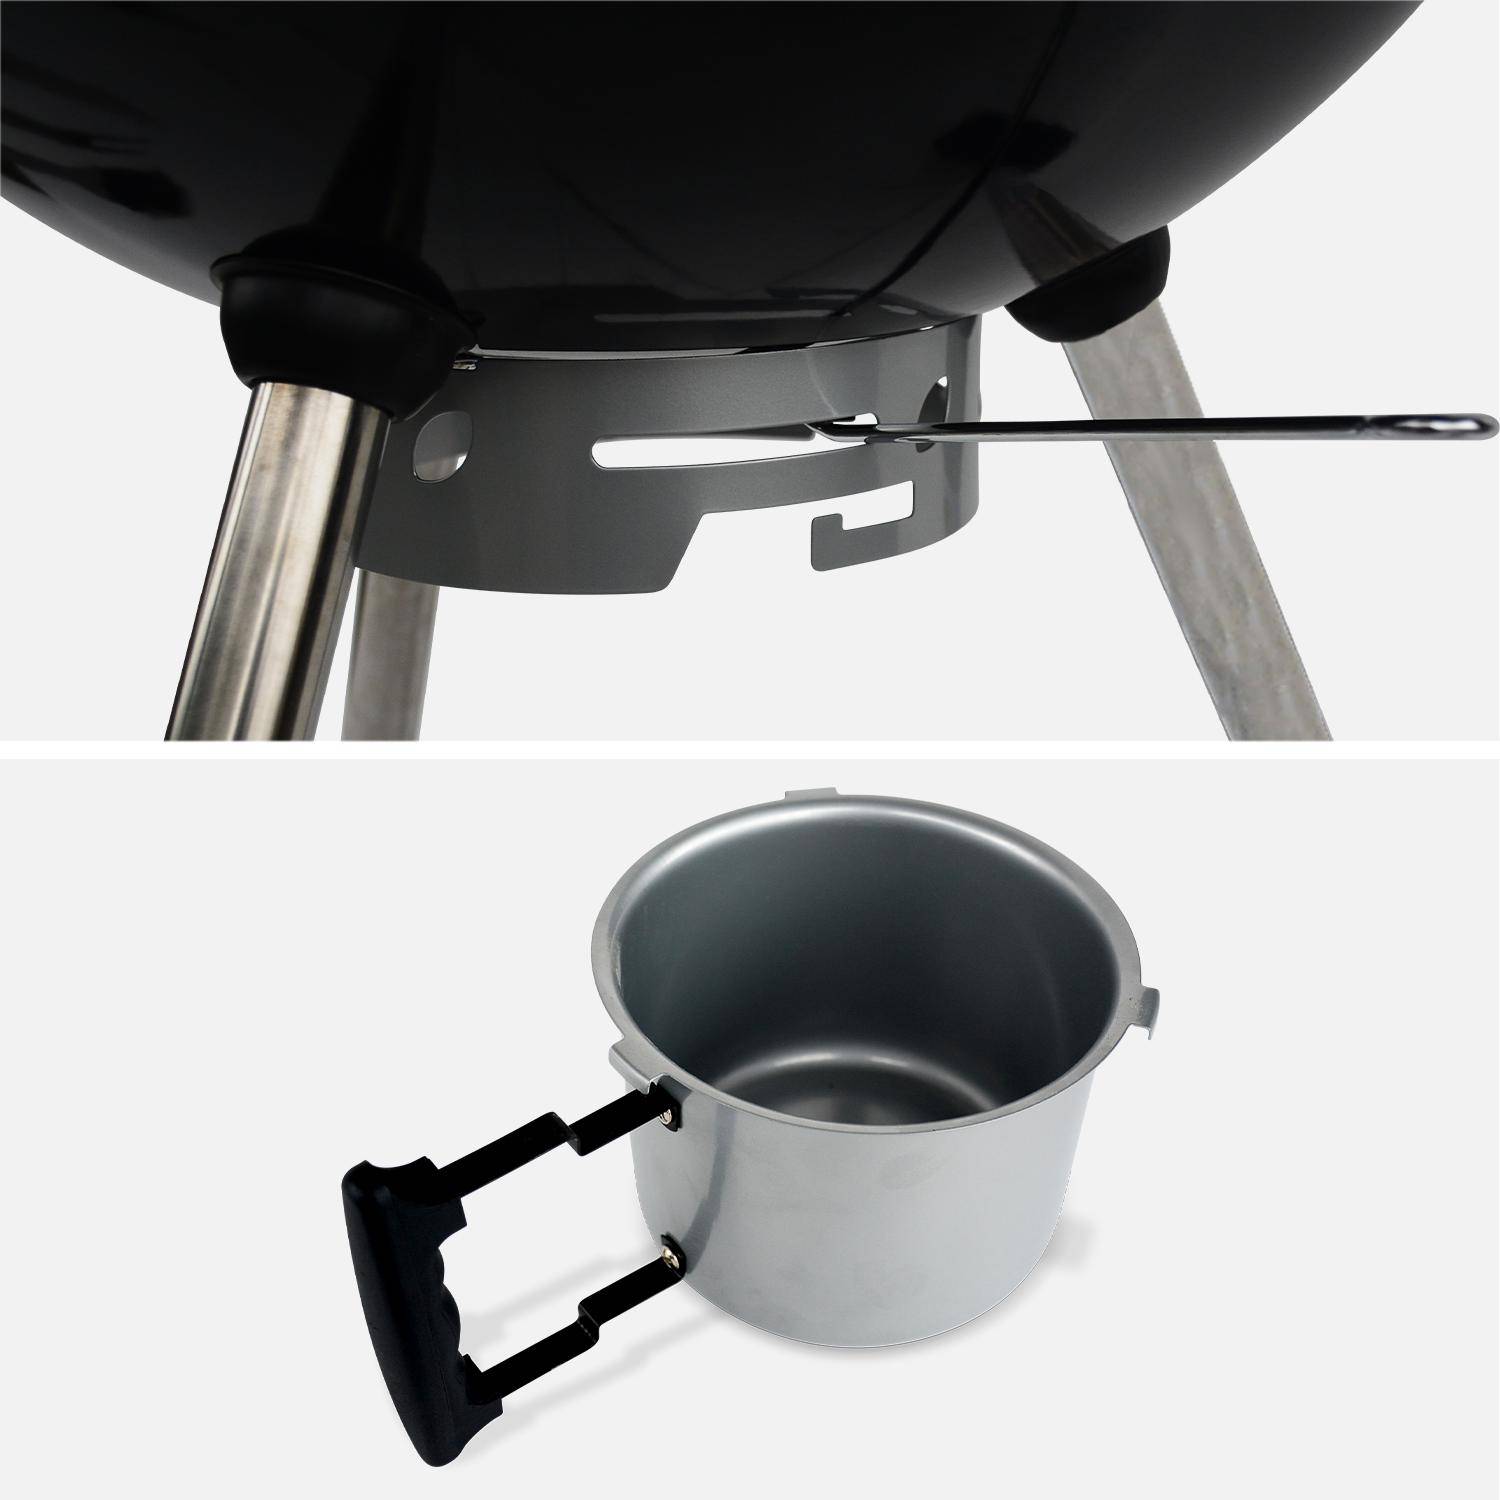 Premium charcoal kettle barbecue, 68x72x102cm - Charles,sweeek,Photo6